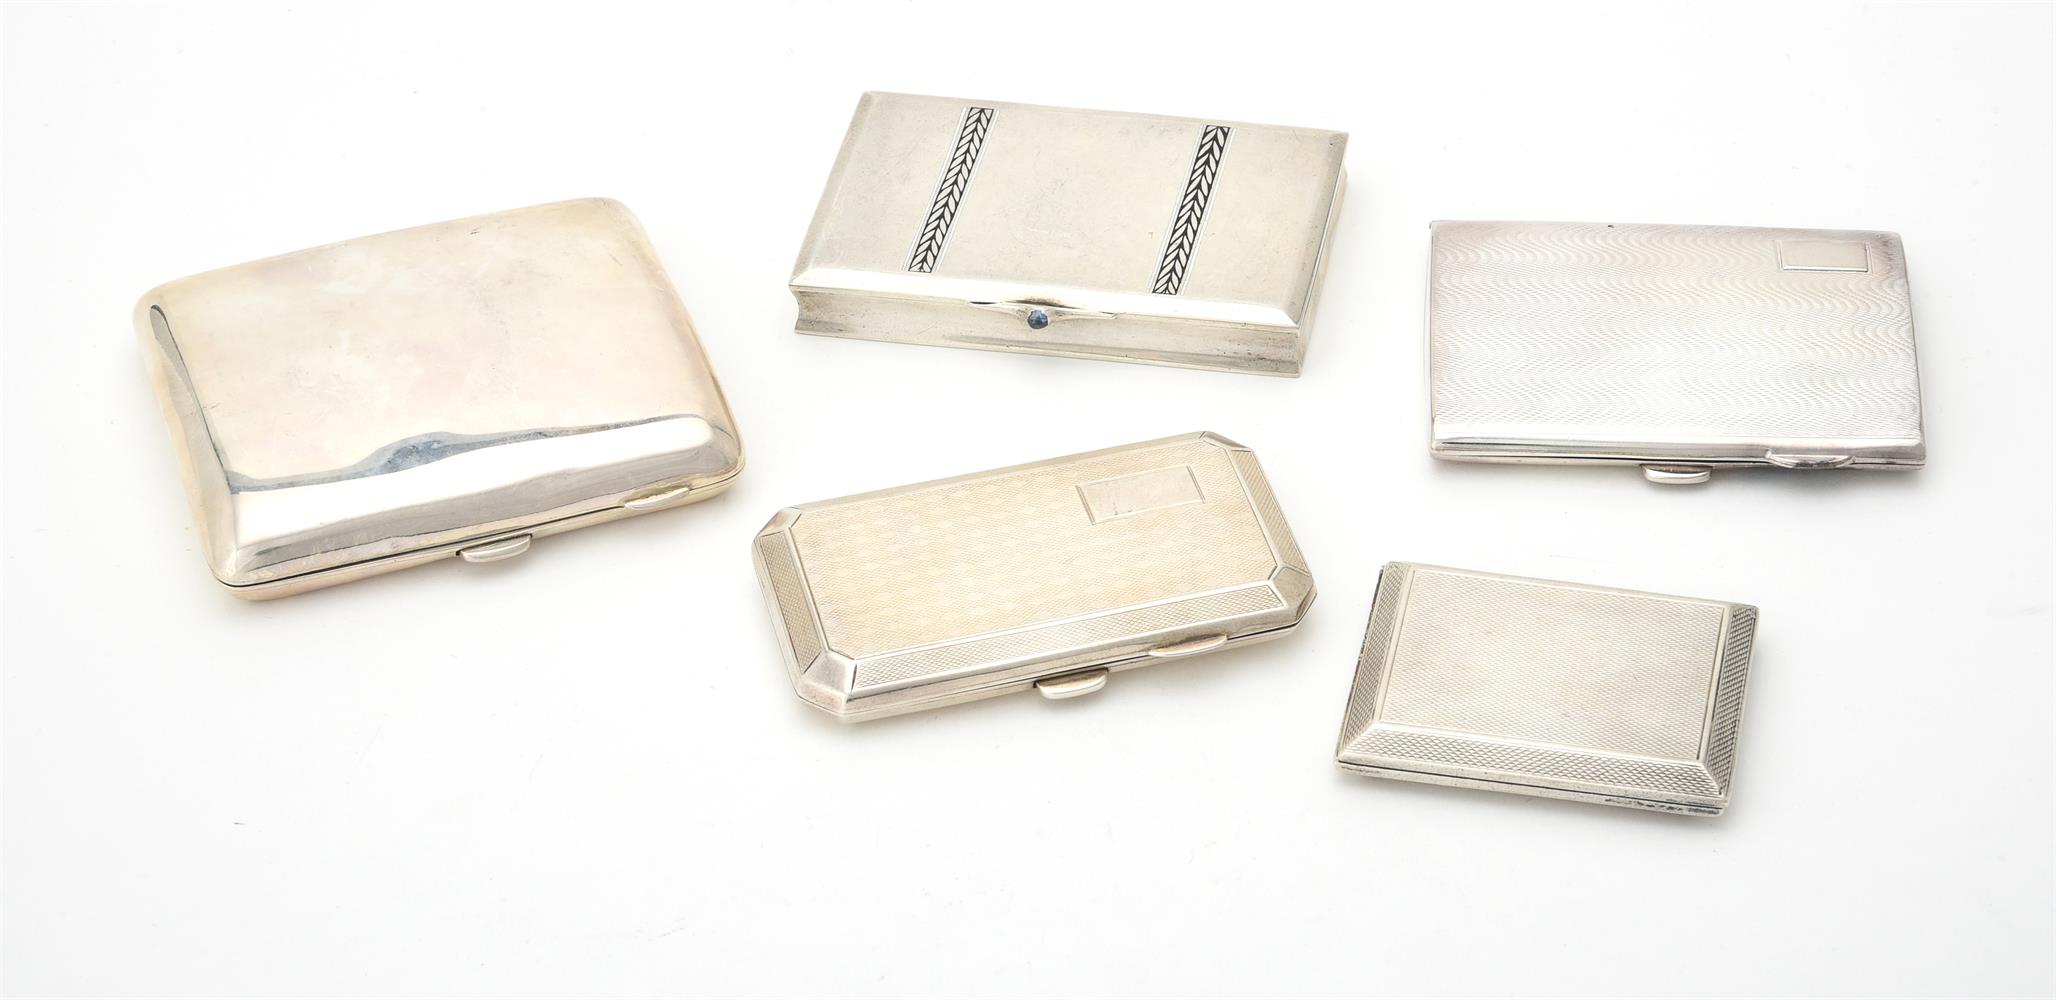 A silver rectangular cigarette case by Kimberley & Hewitt Ltd.